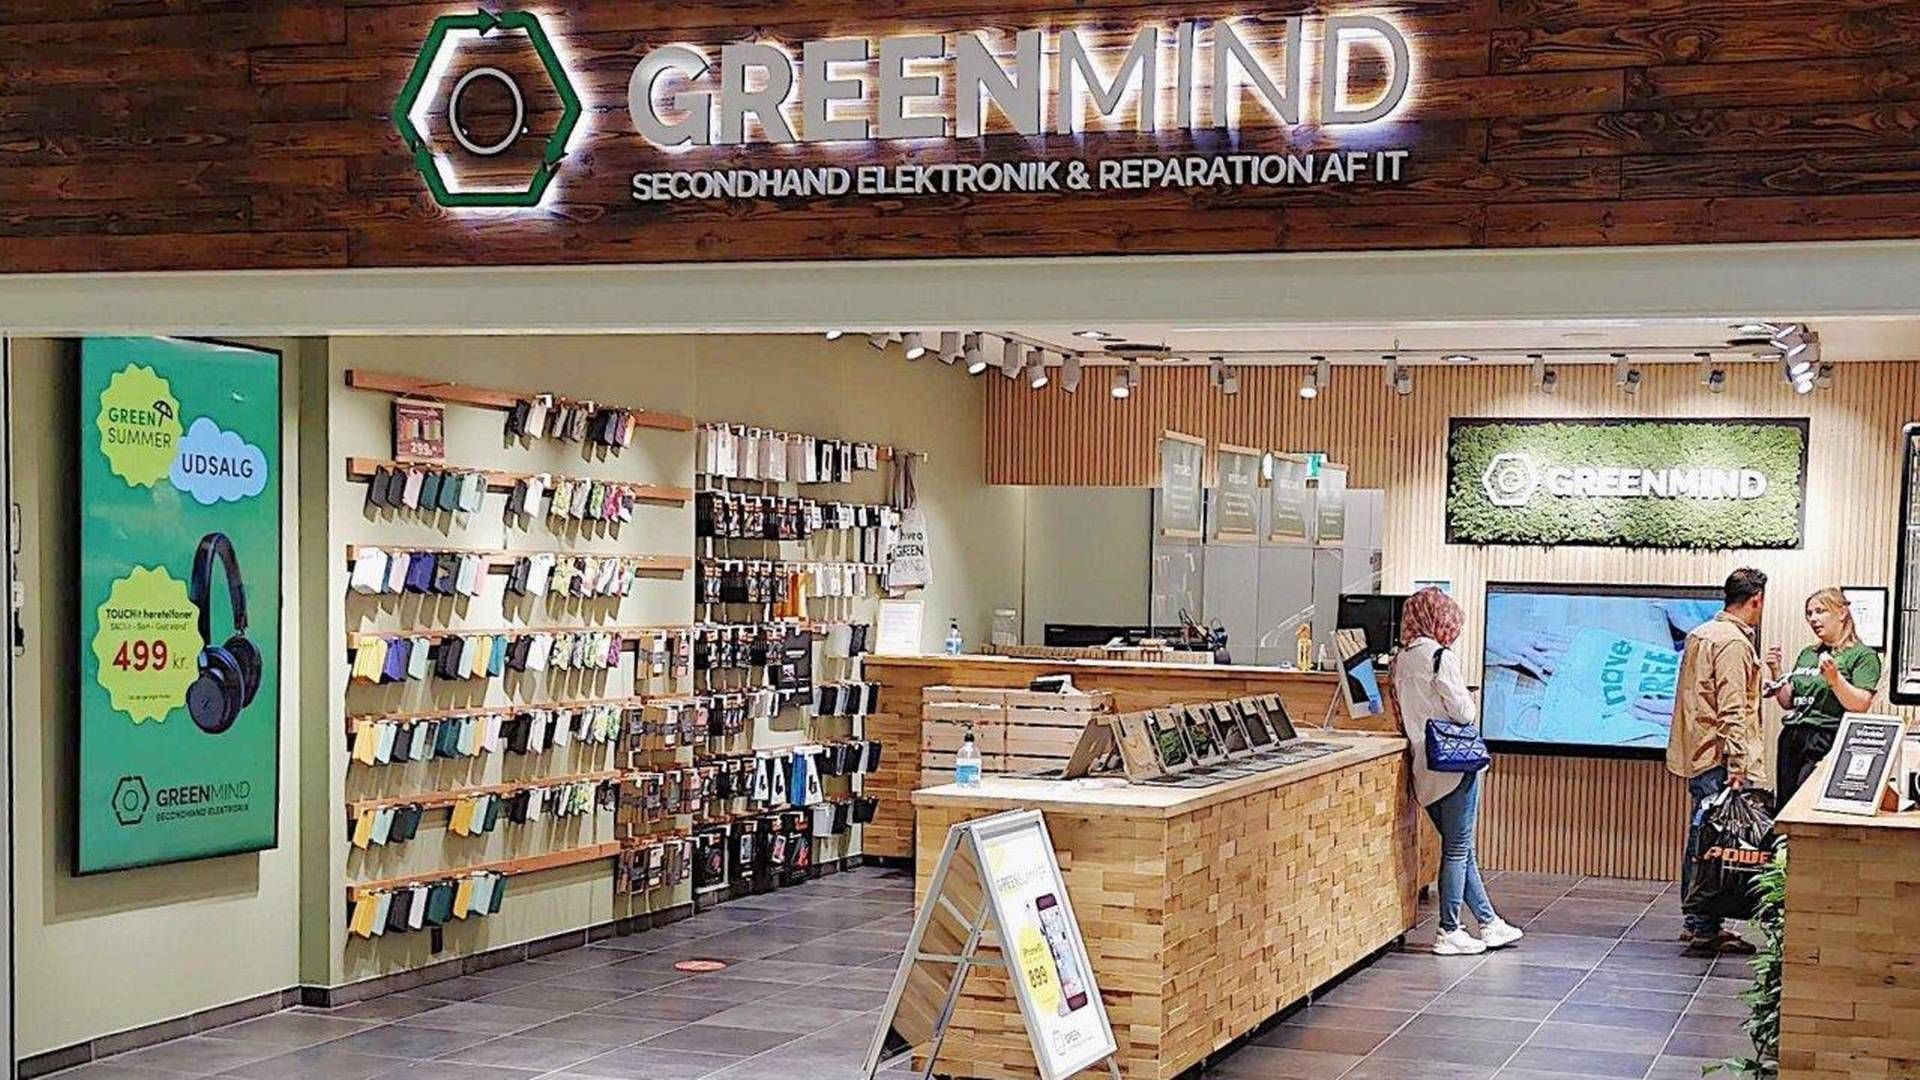 Blue City fusionerede i december 2021 med Greenmind. Ved fusionen havde de to virksomheder 16 butikker, hvilket i dag er reduceret til 13. | Foto: Greenmind/pr